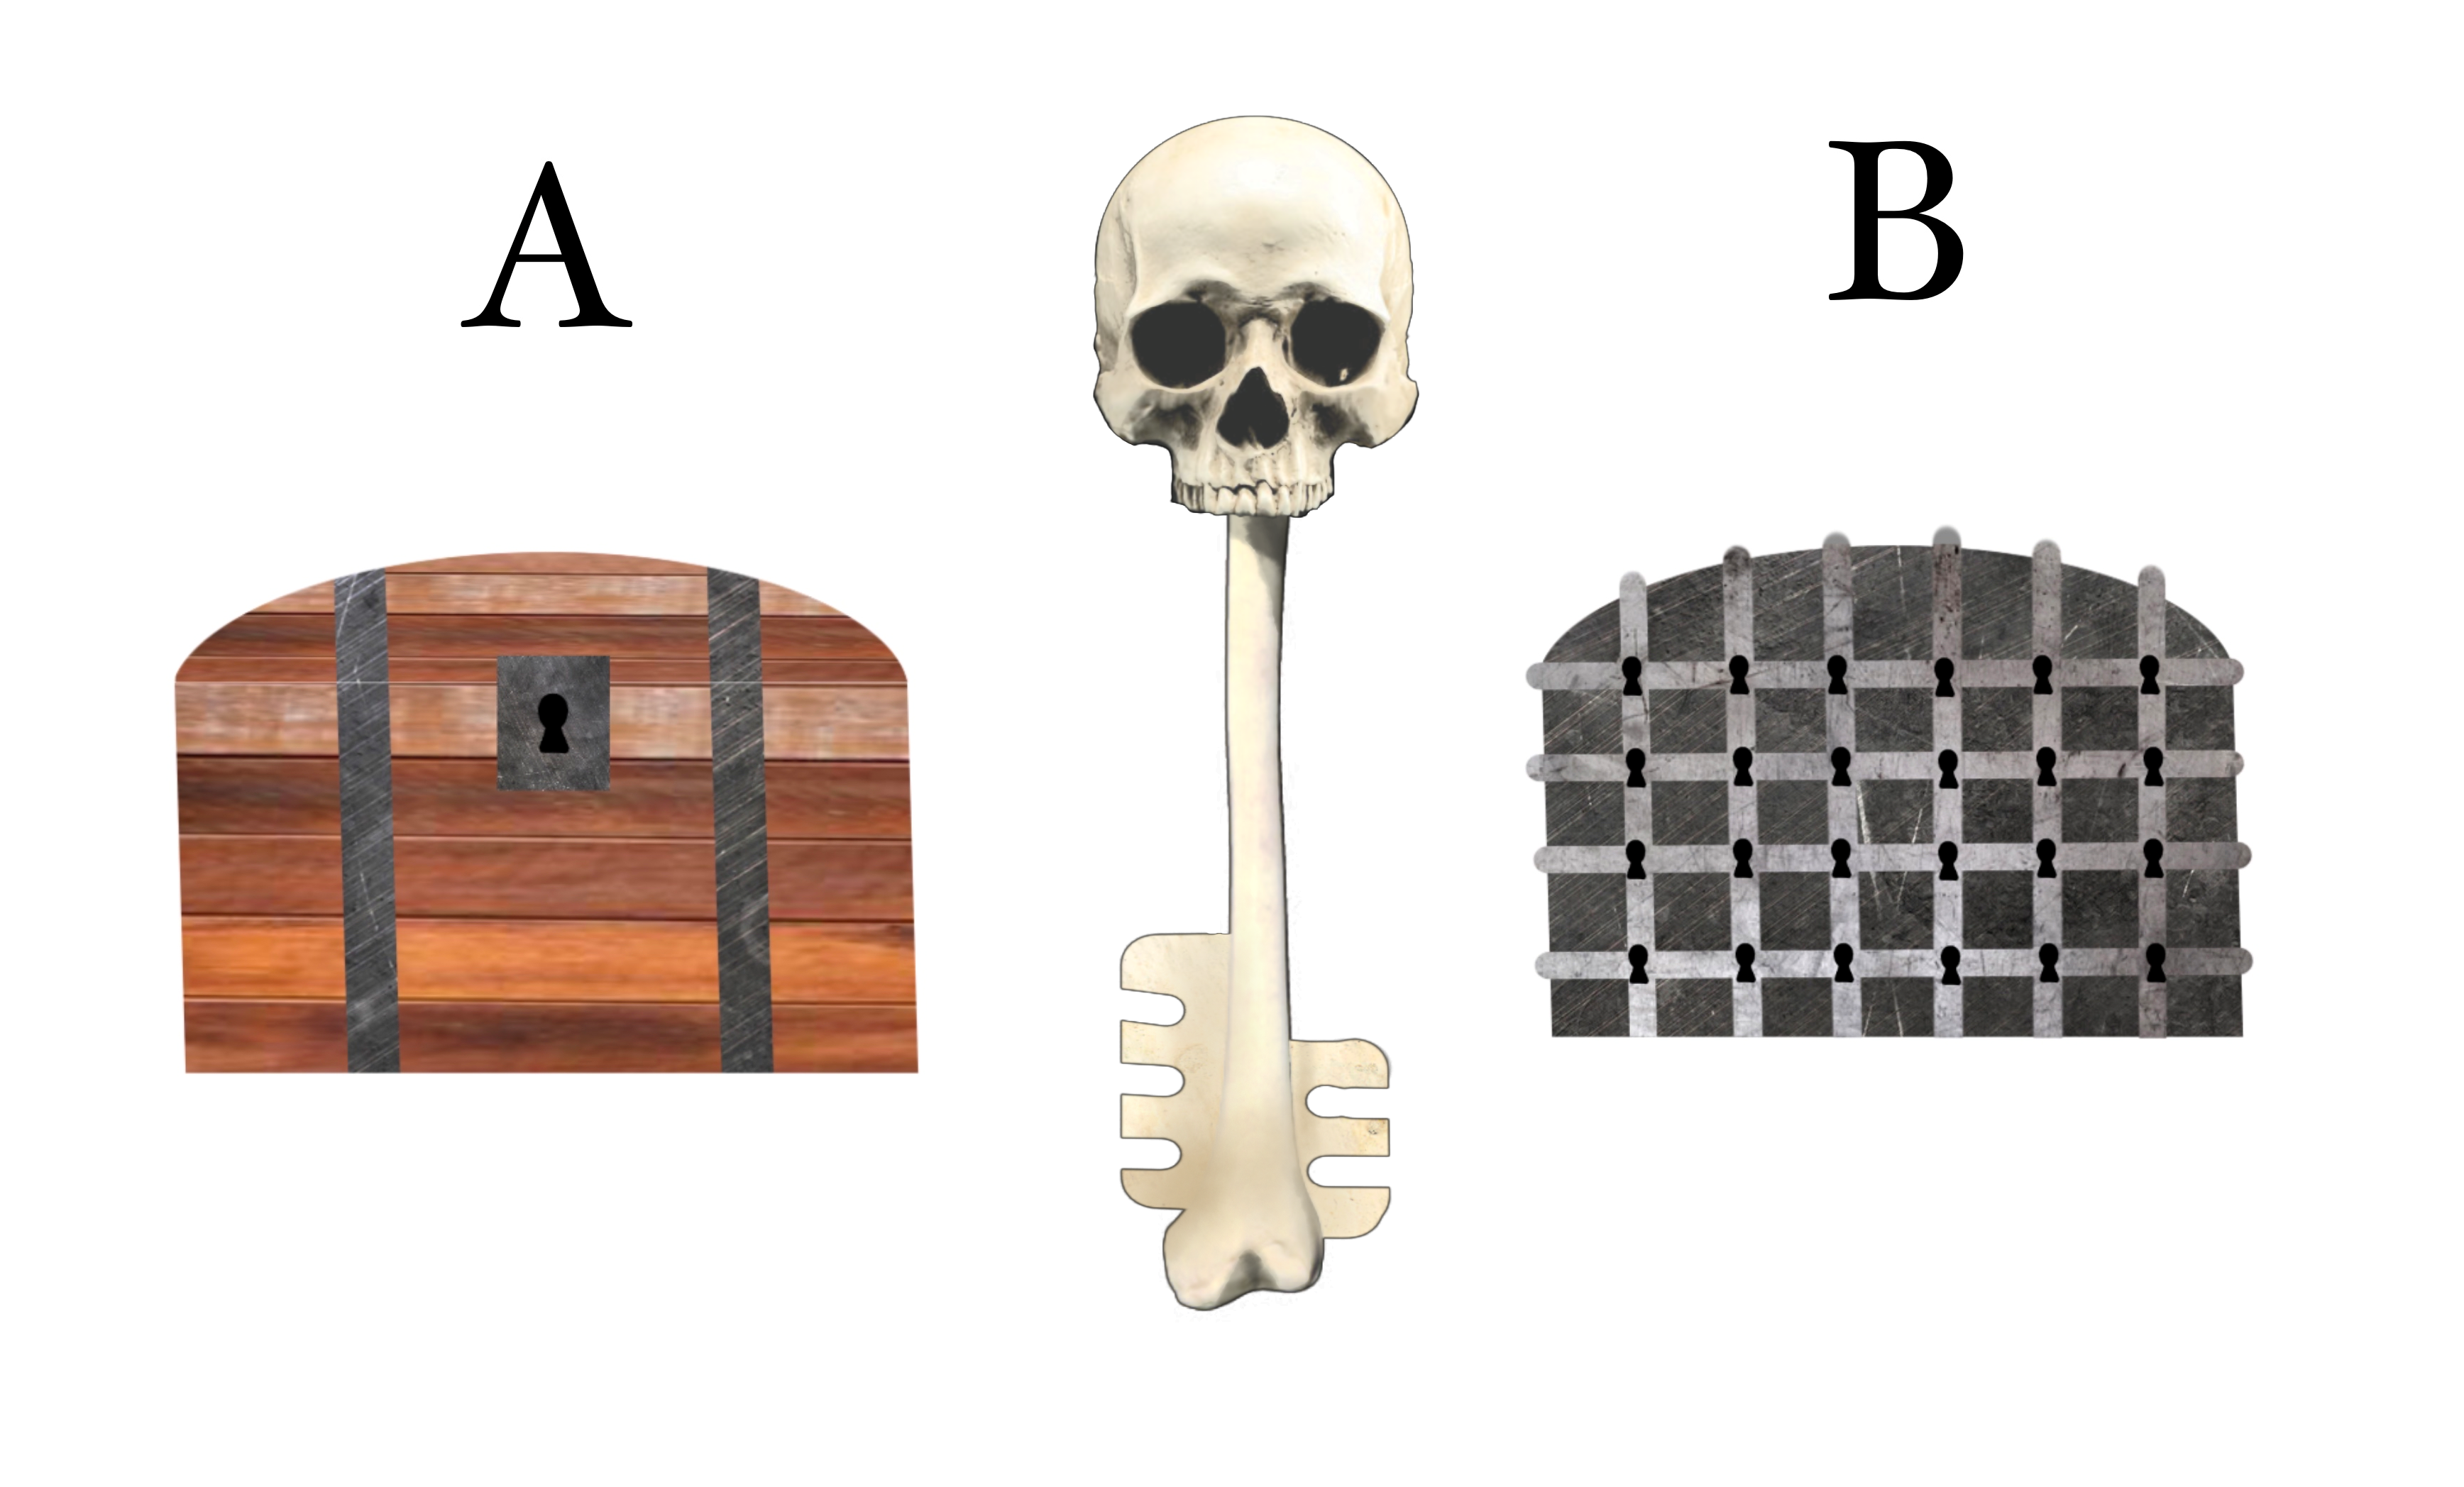 Skeleton Key, DOORS Wiki